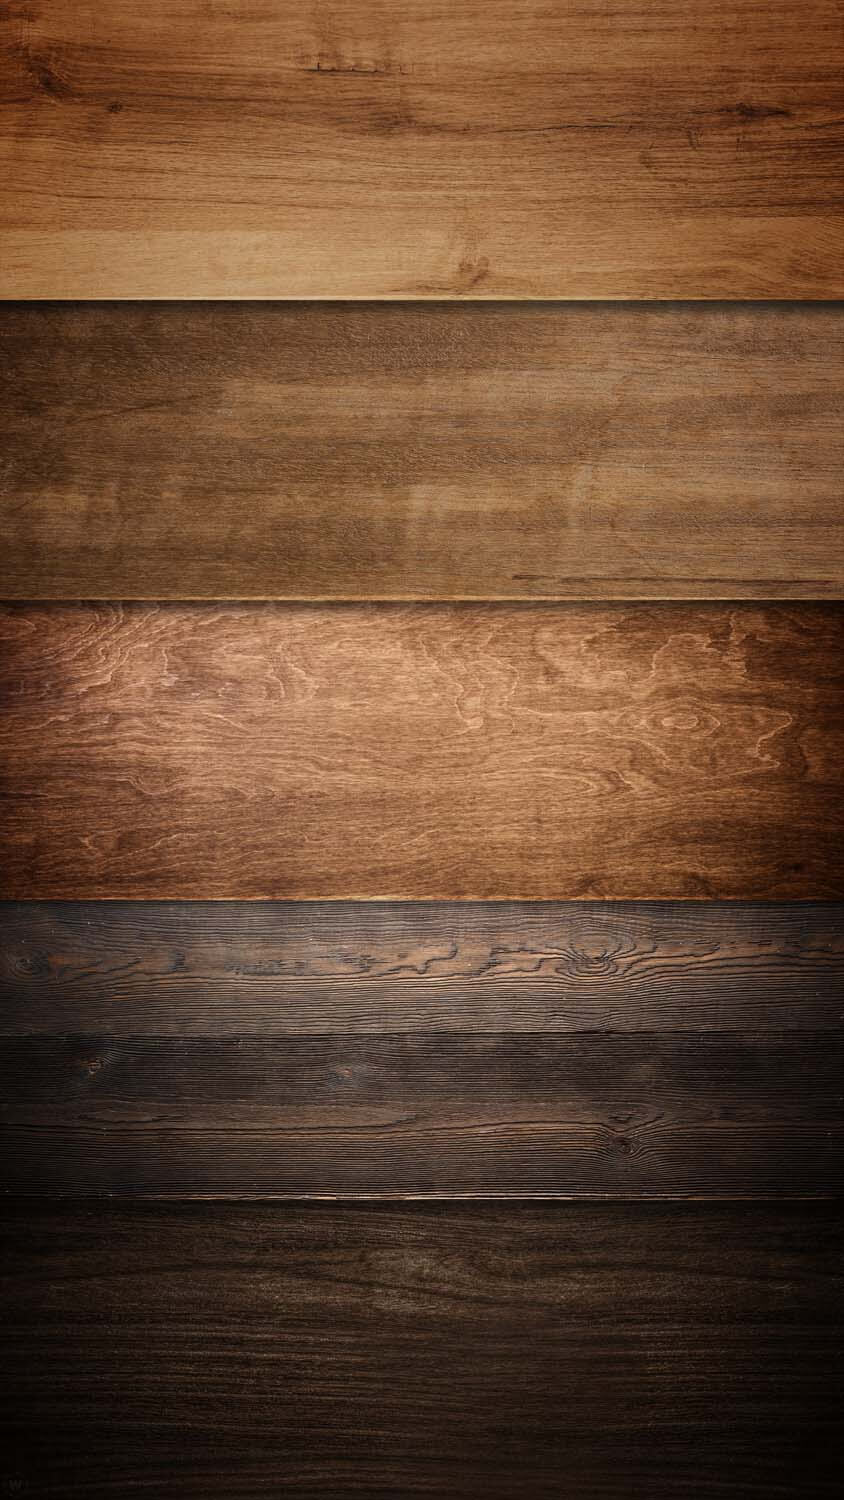 Wooden Floor Texture iPhone 5 Wallpaper Download  iPad Wallpapers  iPhone  Wallpapers Onestop Dow  Wood wallpaper Iphone 6 plus wallpaper Wooden  floor texture